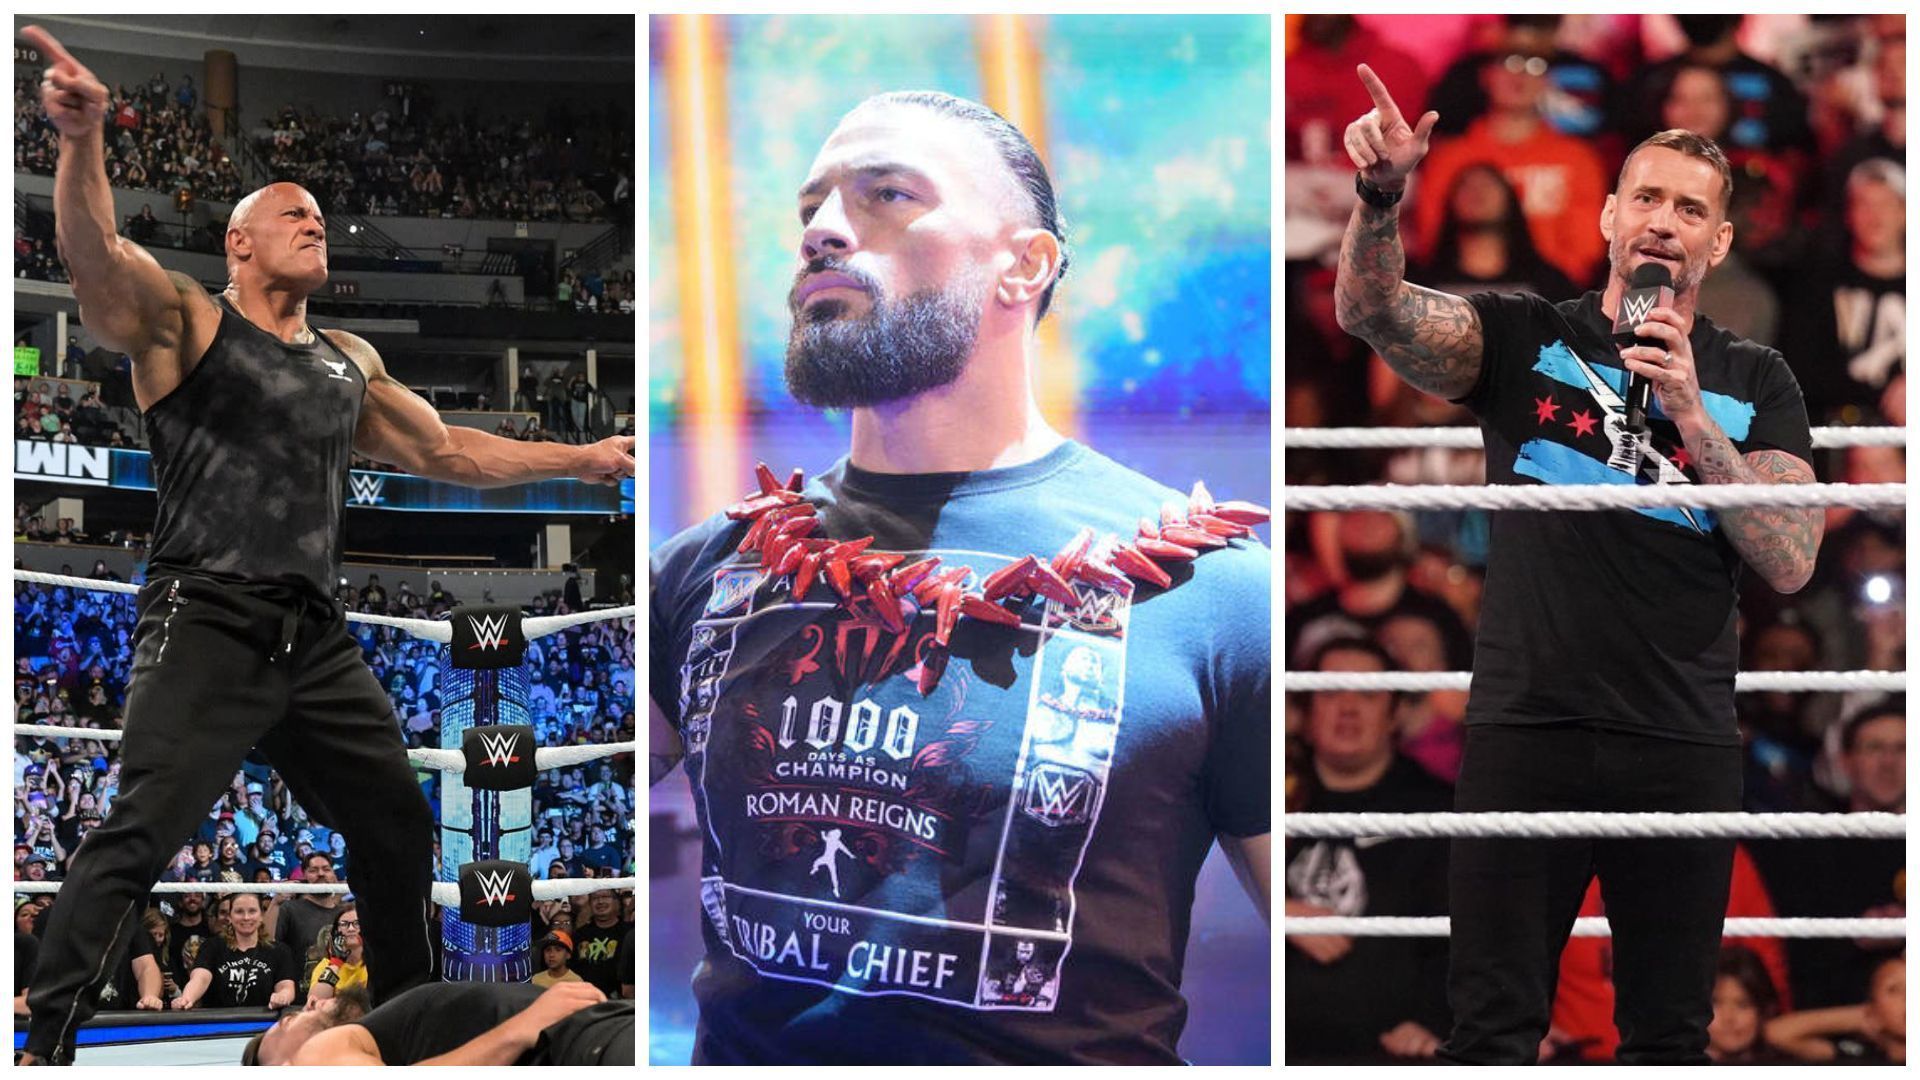 The Rock (left), Roman Reigns (middle), CM Punk (right).